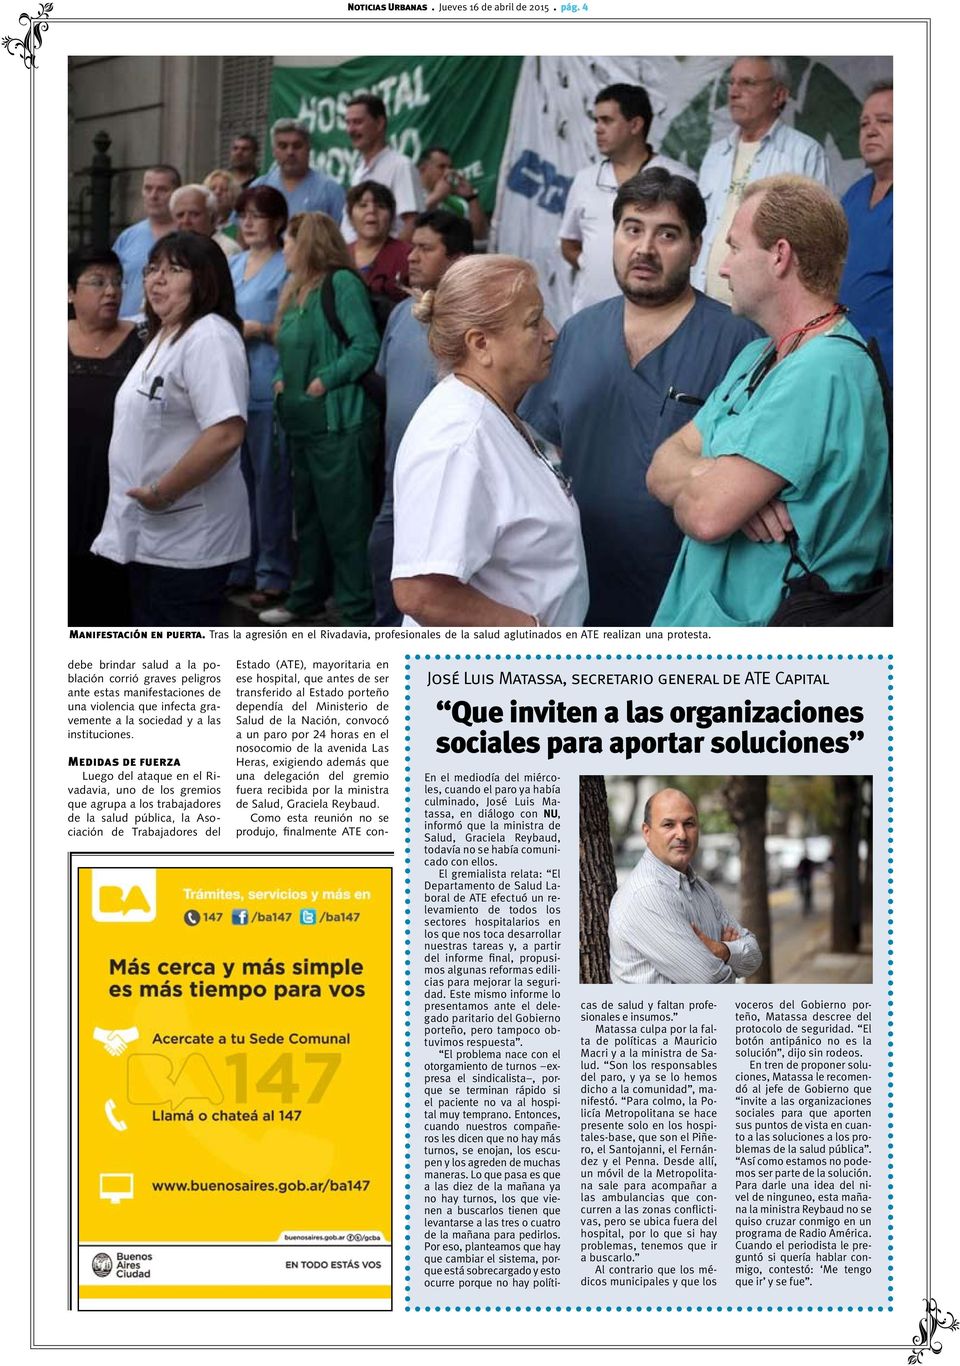 Medidas de fuerza Luego del ataque en el Rivadavia, uno de los gremios que agrupa a los trabajadores de la salud pública, la Asociación de Trabajadores del Estado (ATE), mayoritaria en ese hospital,